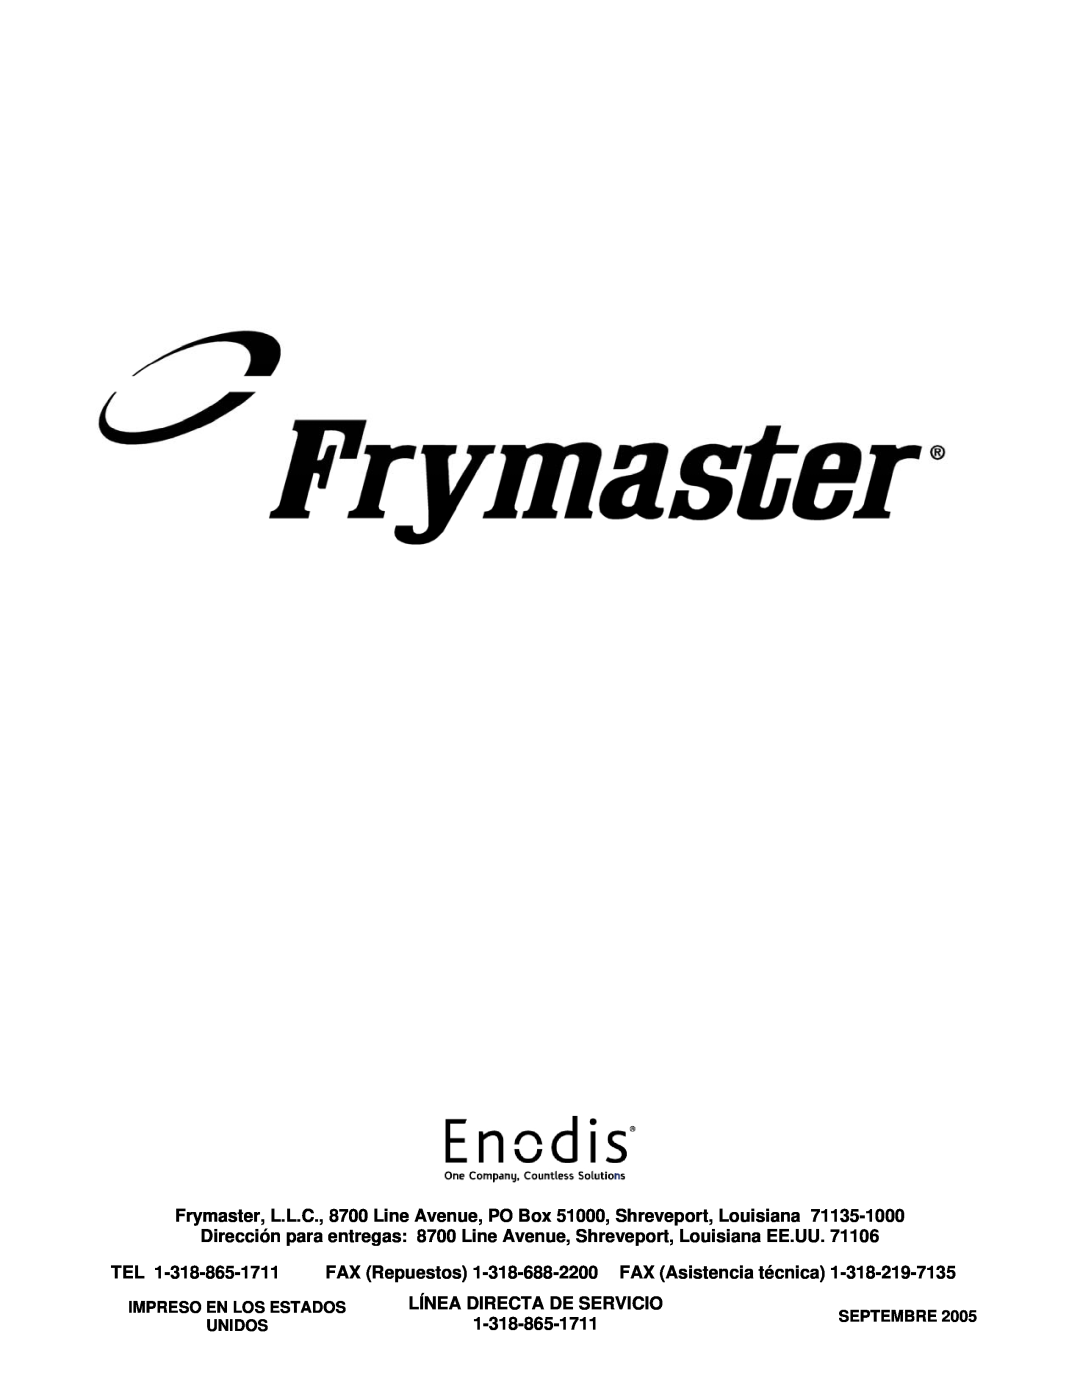 Frymaster H55 FAX Repuestos, FAX Asistencia técnica, Línea Directa De Servicio, Impreso En Los Estados, Septembre, Unidos 